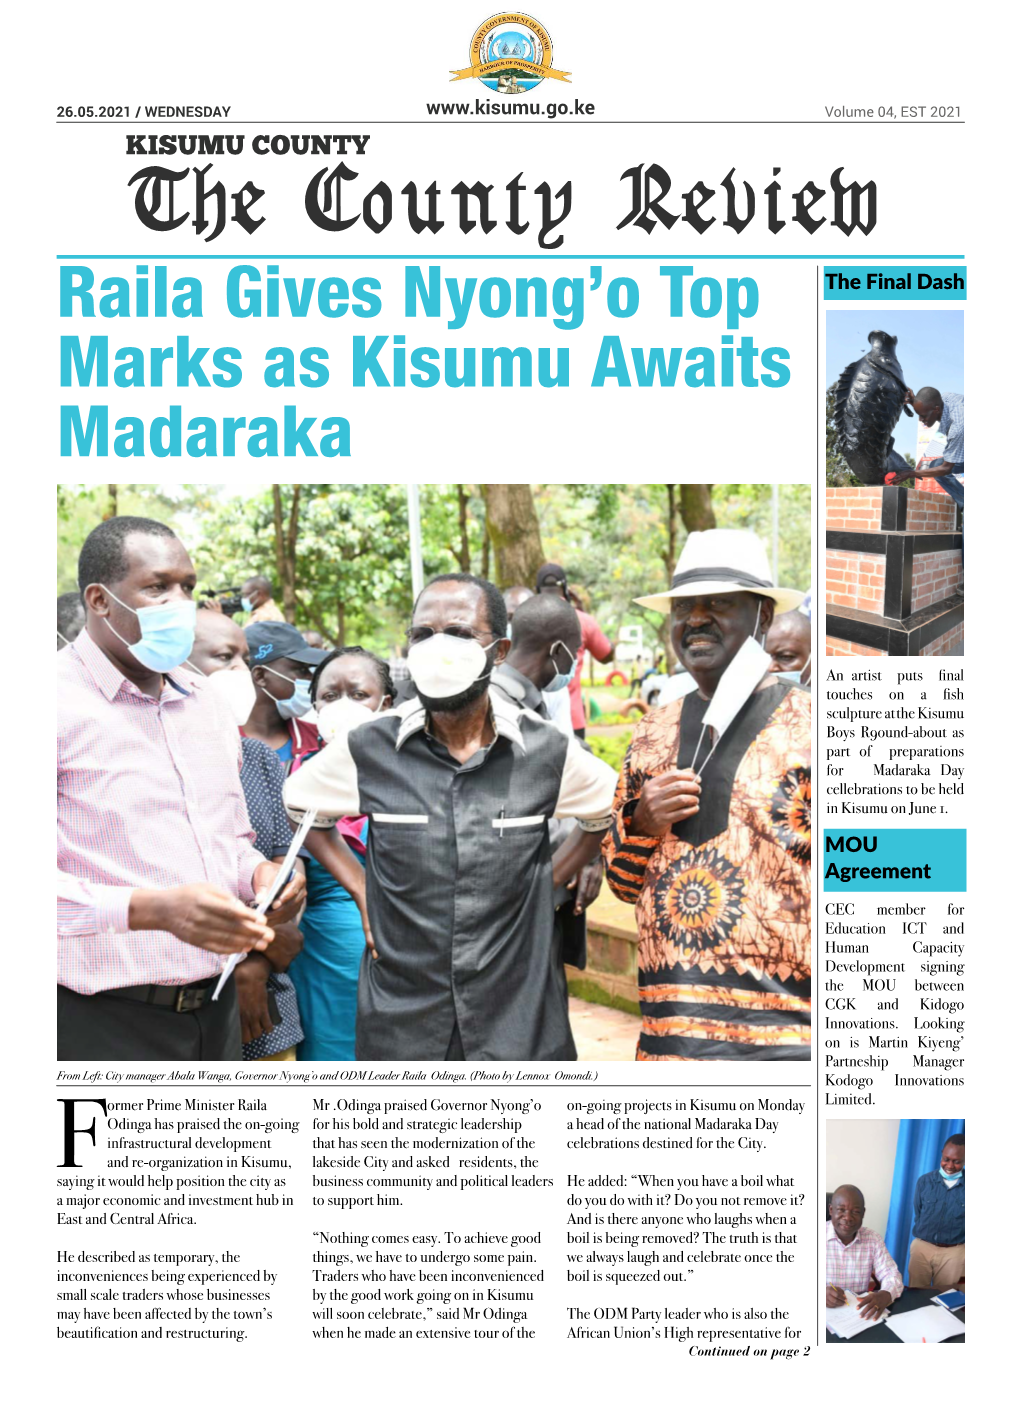 The County Review Raila Gives Nyong’O Top the Final Dash Marks As Kisumu Awaits Madaraka